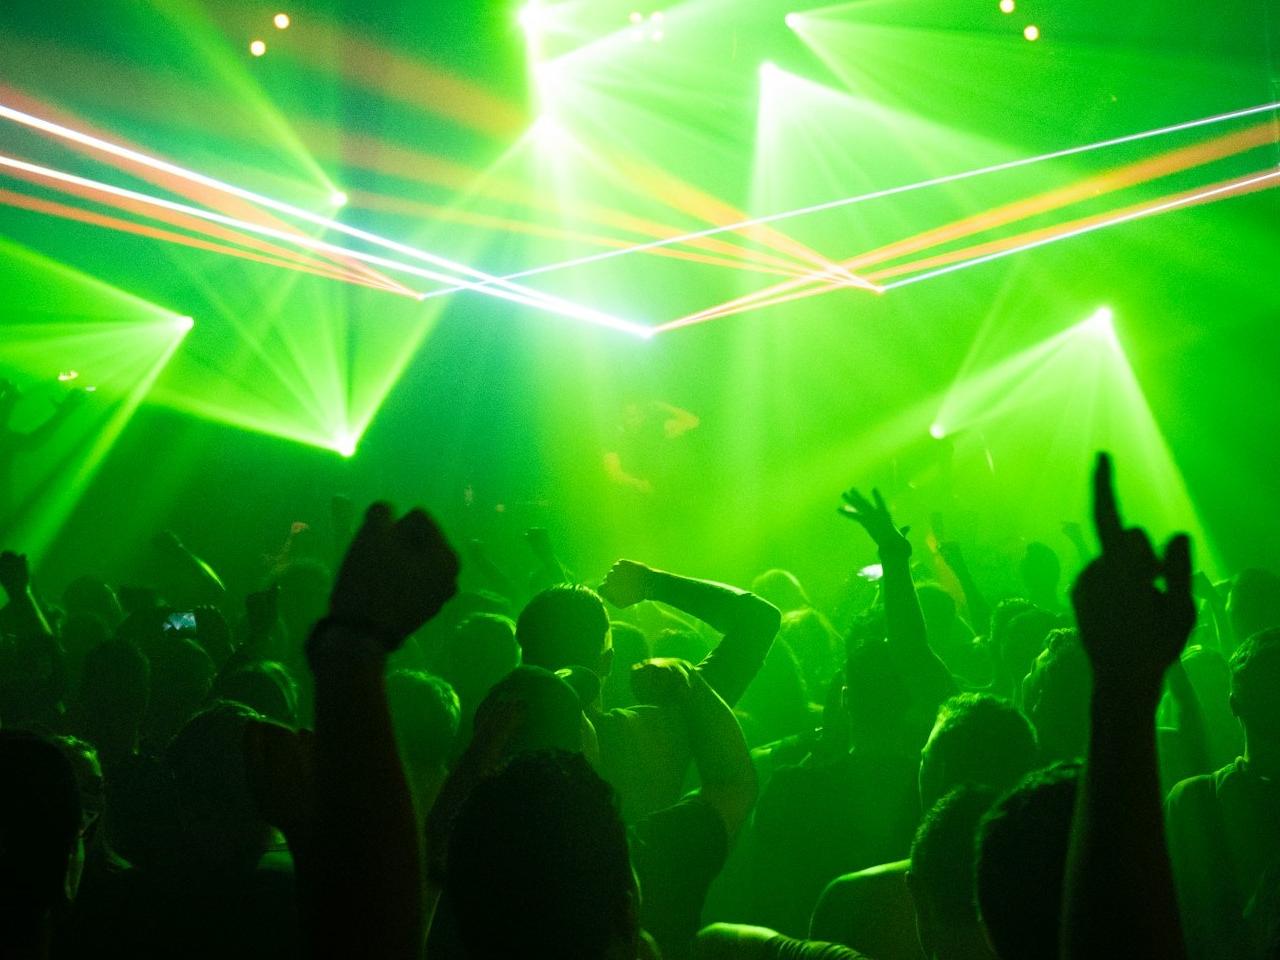 Tnanzende Menge im Club bei grünem Licht; im Hintergrund ein D.J.